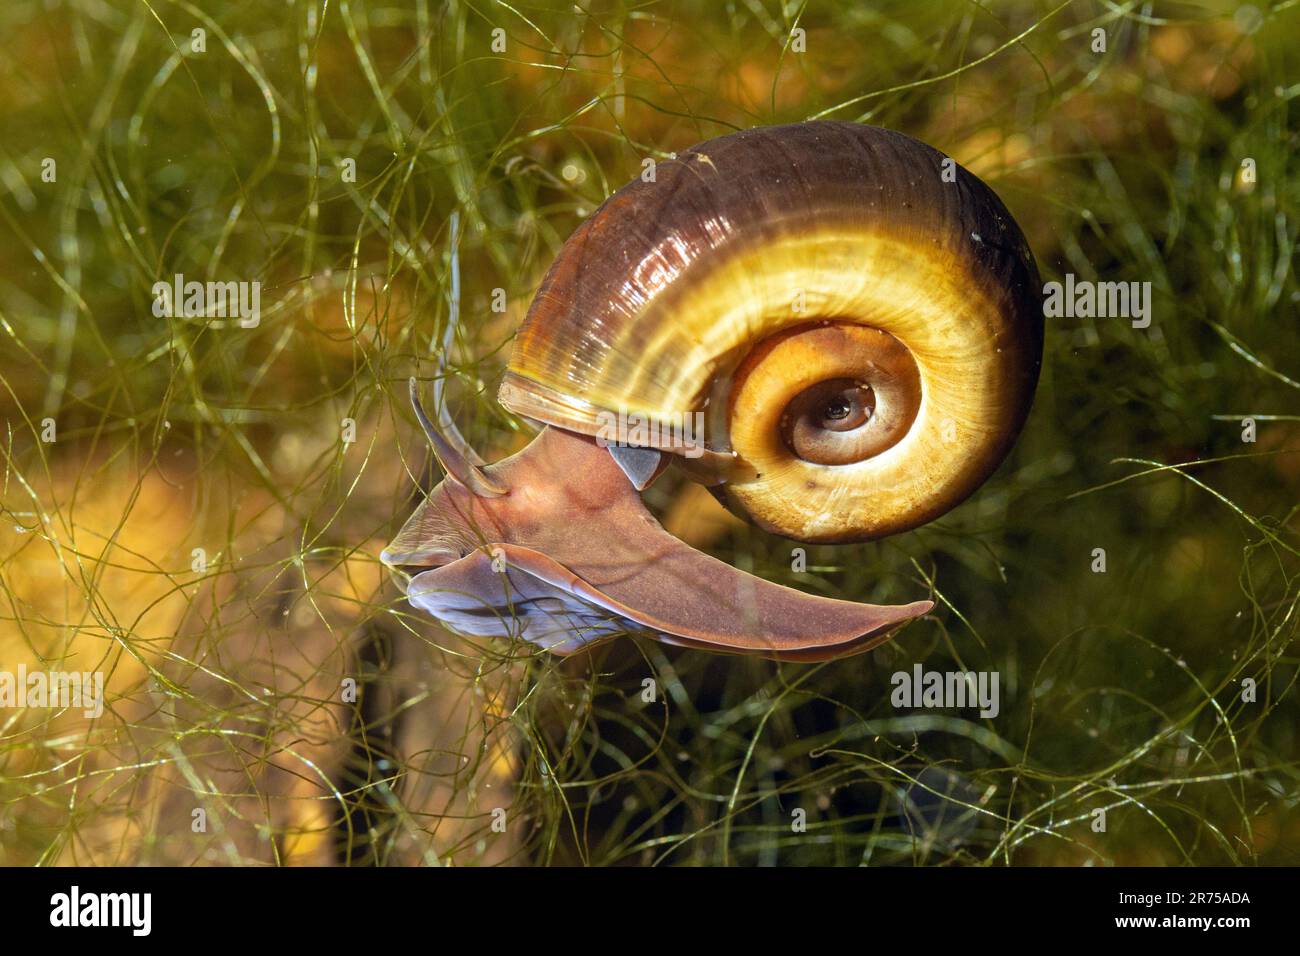 Corno di montone colorato, grande ramshorn, tromba (Planorbarius corneus), strisciante attraverso la vegetazione subacquea, vista laterale Foto Stock